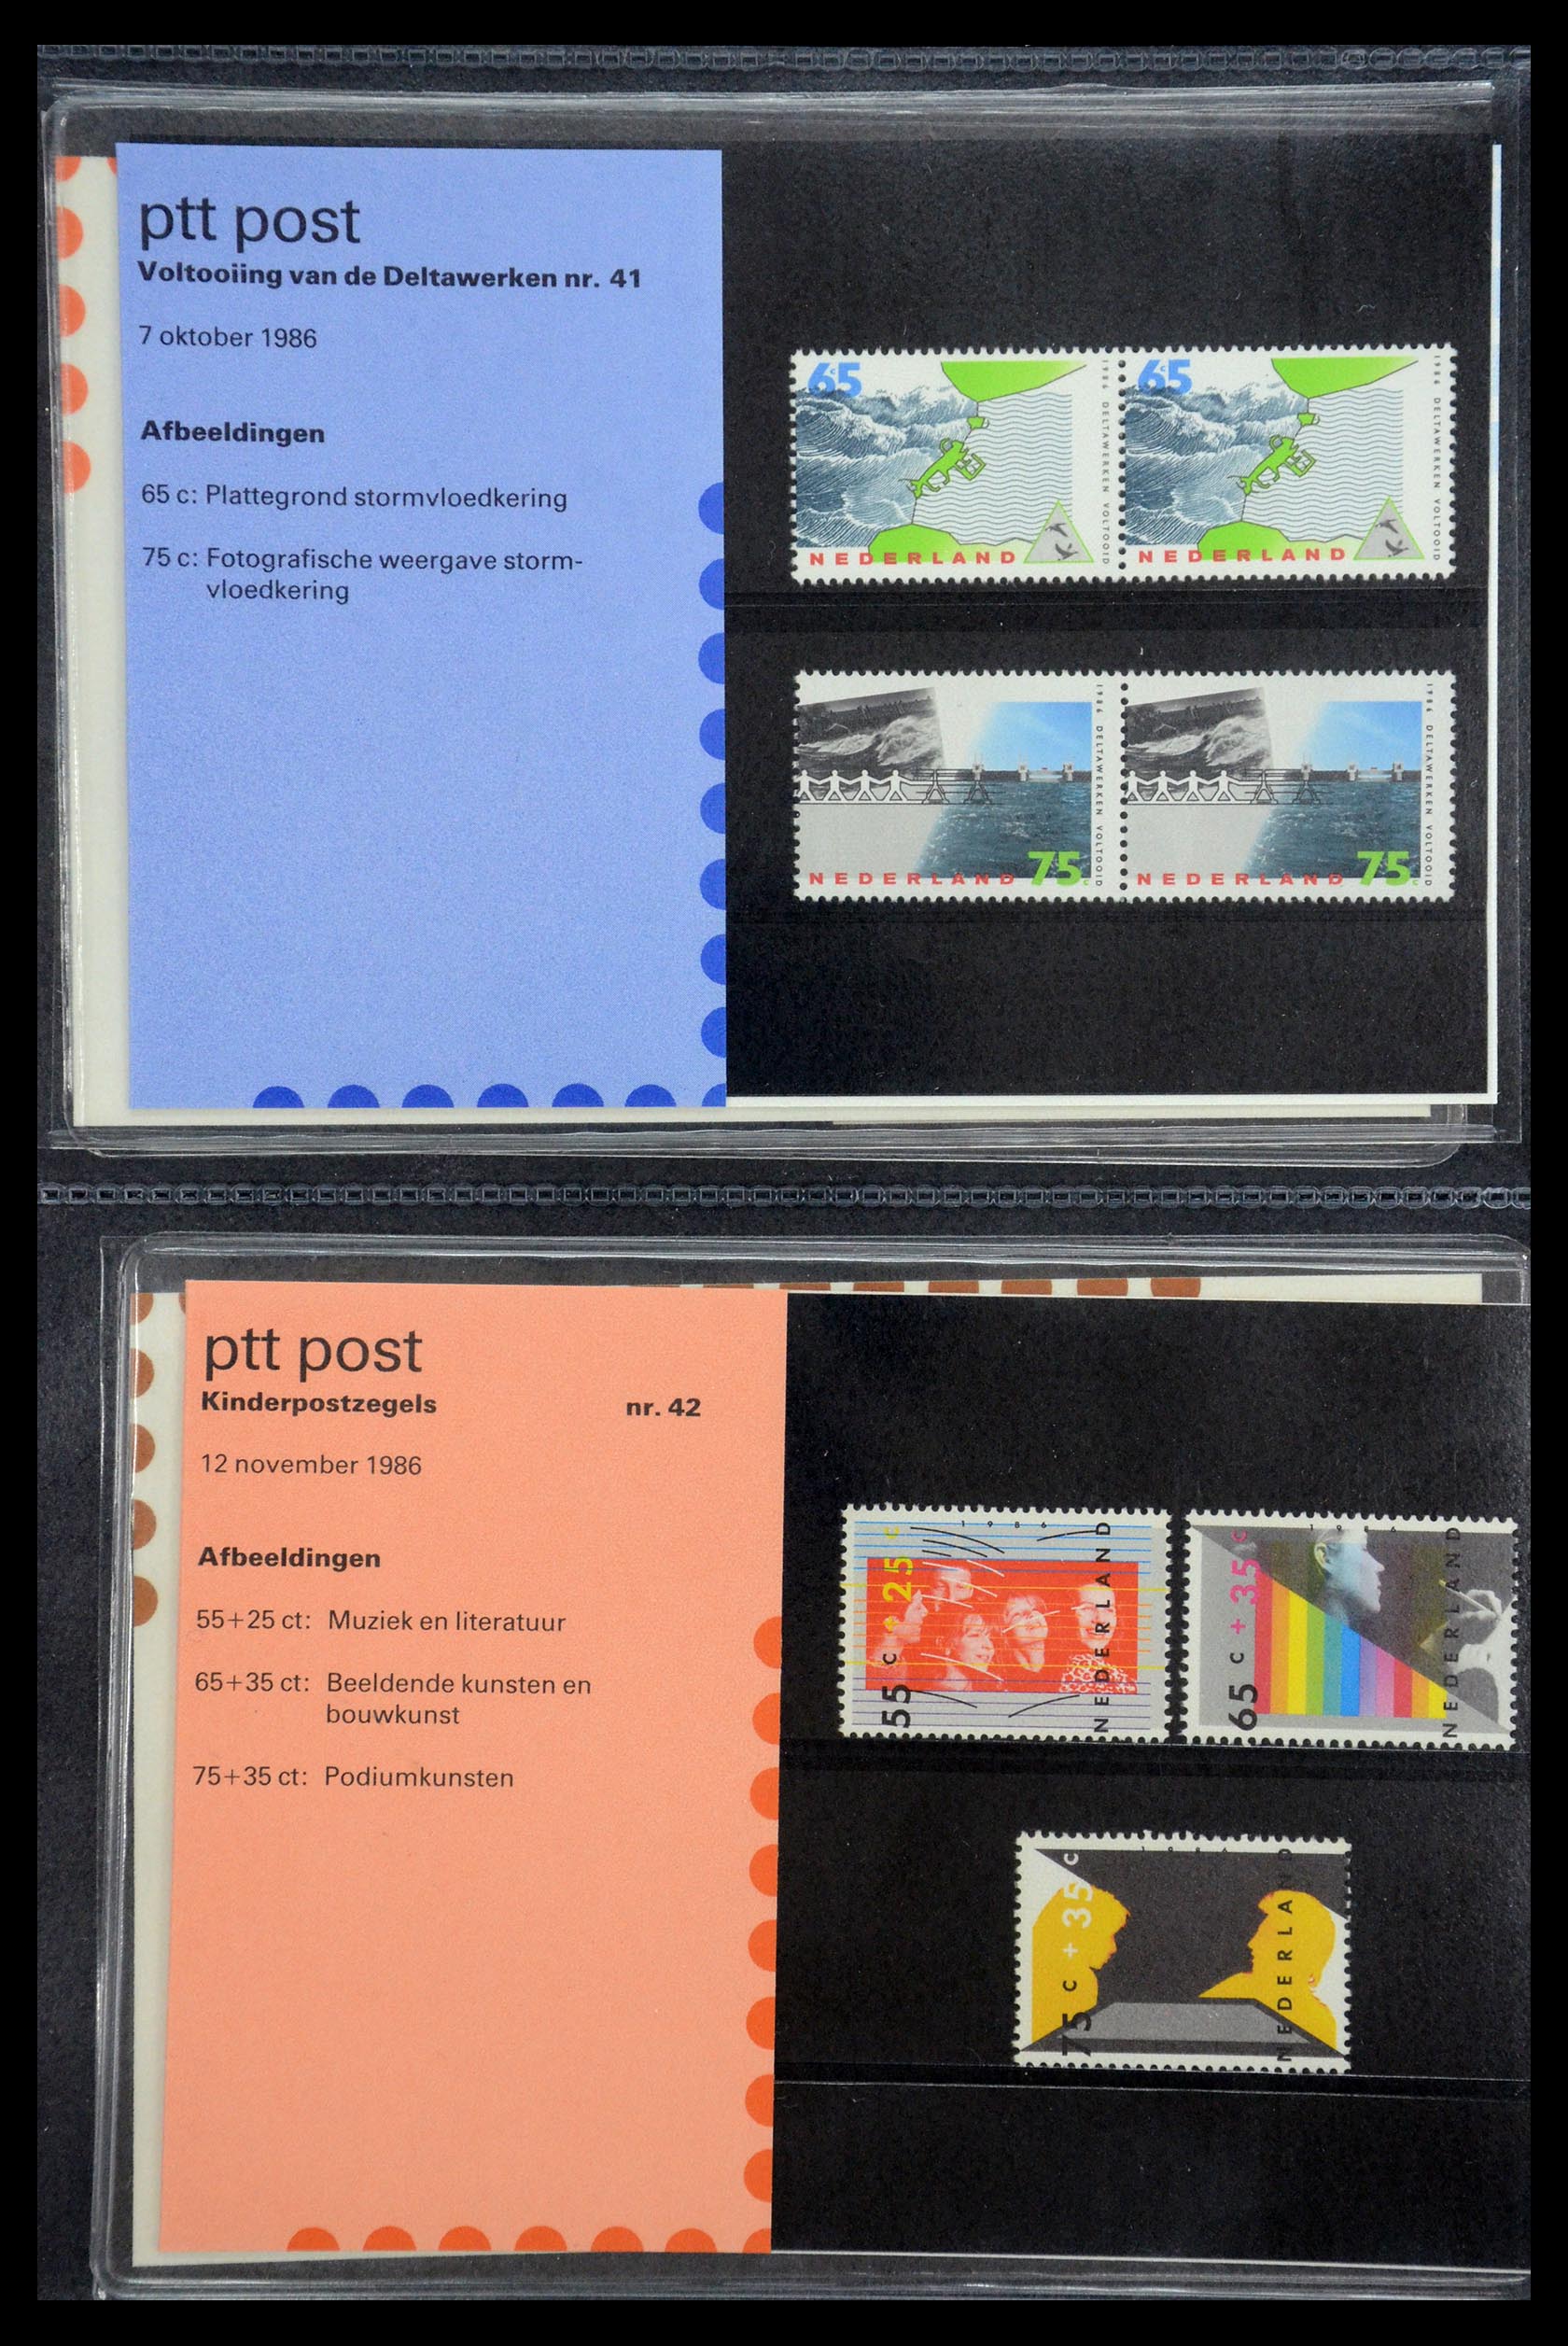 35187 021 - Stamp Collection 35187 Netherlands PTT presentation packs 1982-2019!